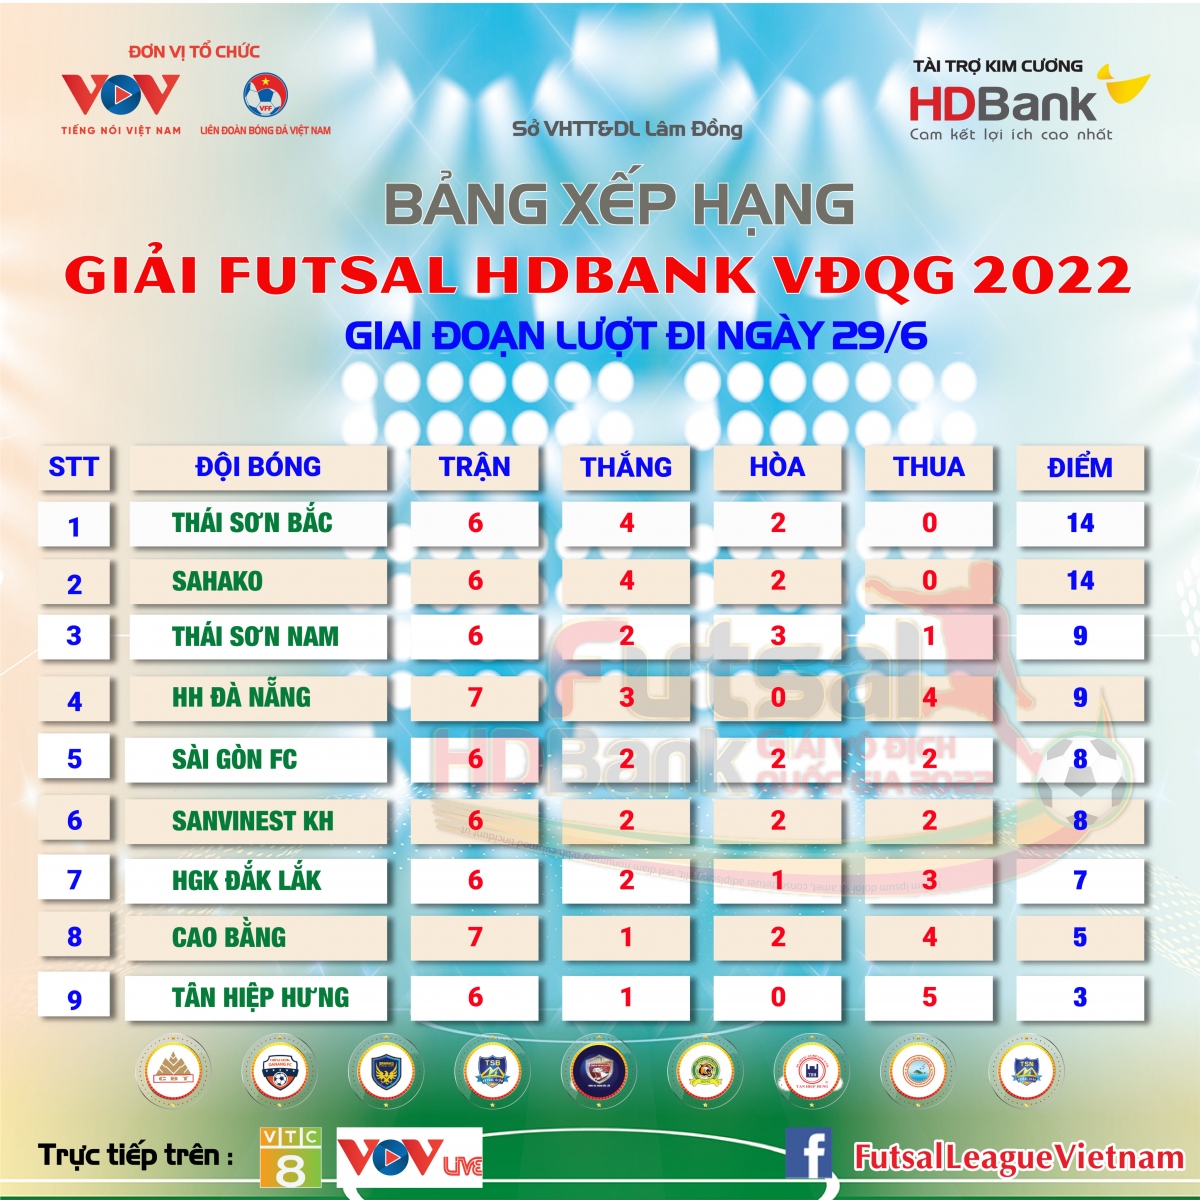 Bảng xếp hạng giải Futsal HDBank VĐQG 2022 mới nhất